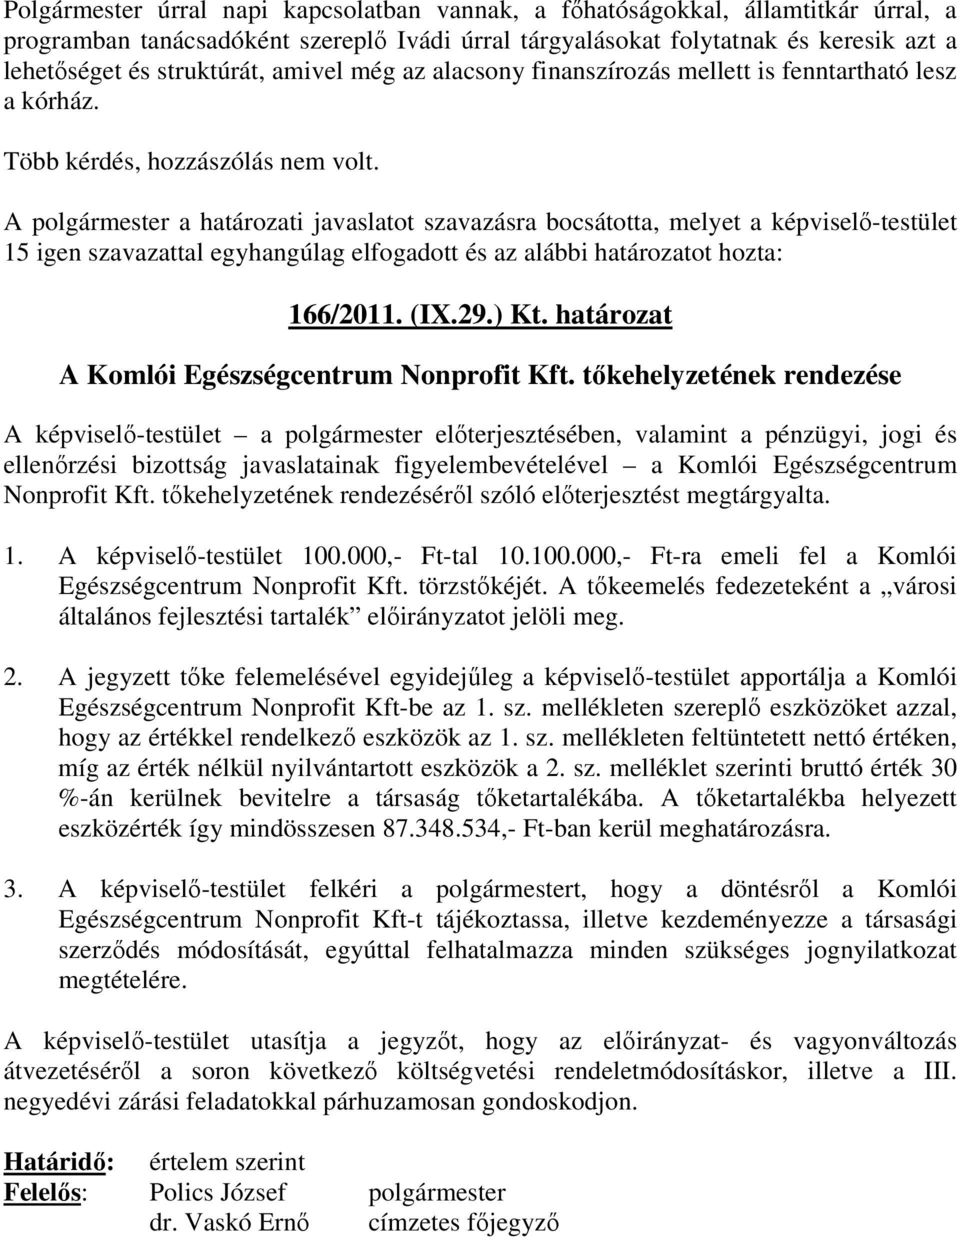 A polgármester a határozati javaslatot szavazásra bocsátotta, melyet a képviselı-testület 15 igen szavazattal egyhangúlag elfogadott és az alábbi határozatot hozta: 166/2011. (IX.29.) Kt.